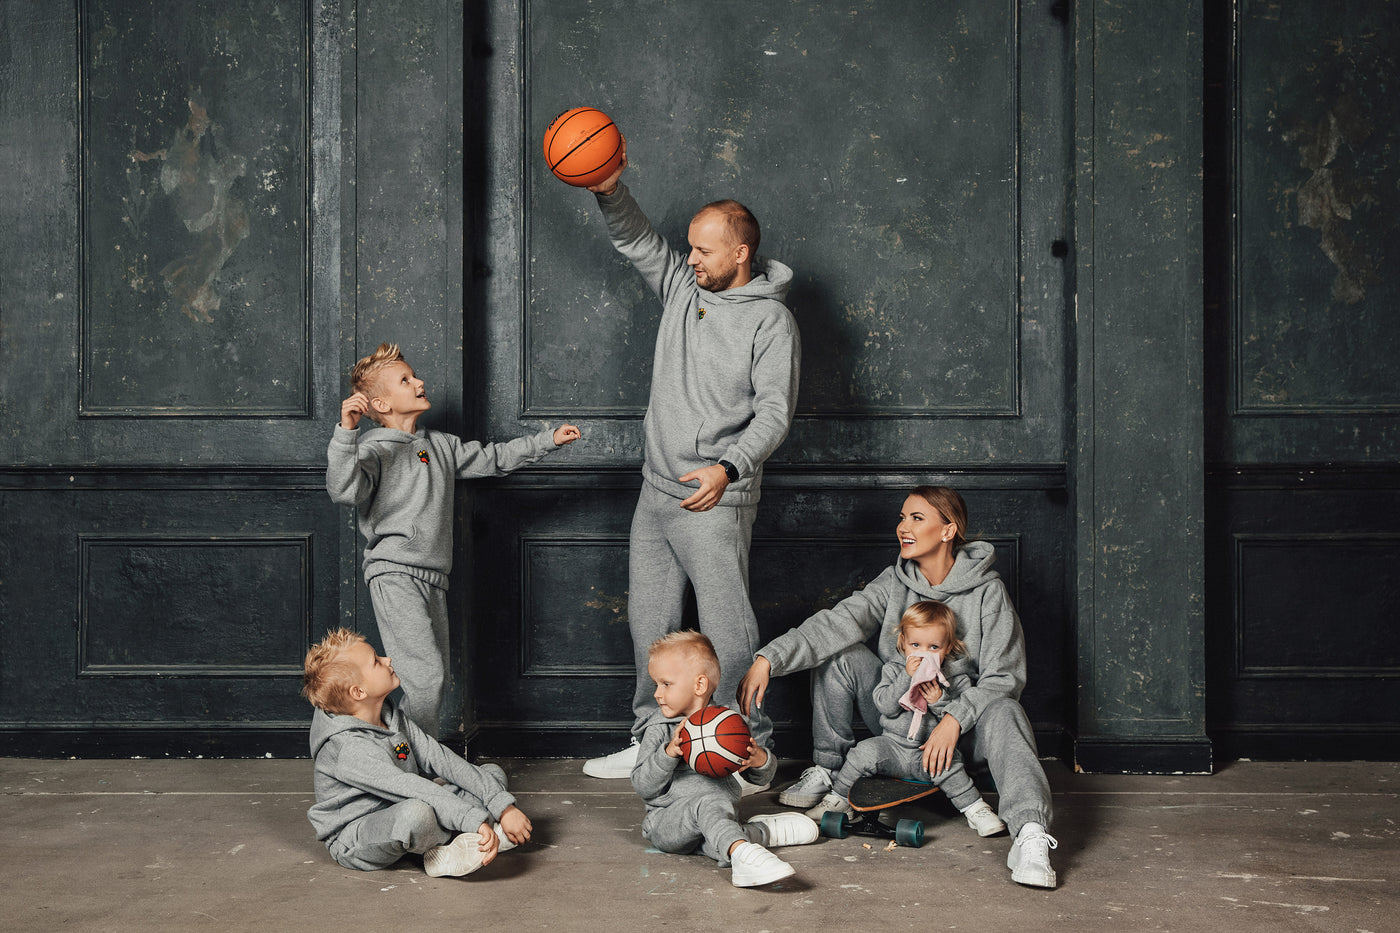 Tėtis ir vaikai žaidžia su krepšinio kamuoliu apsirengę pilkais laisvalaikio kostiumais